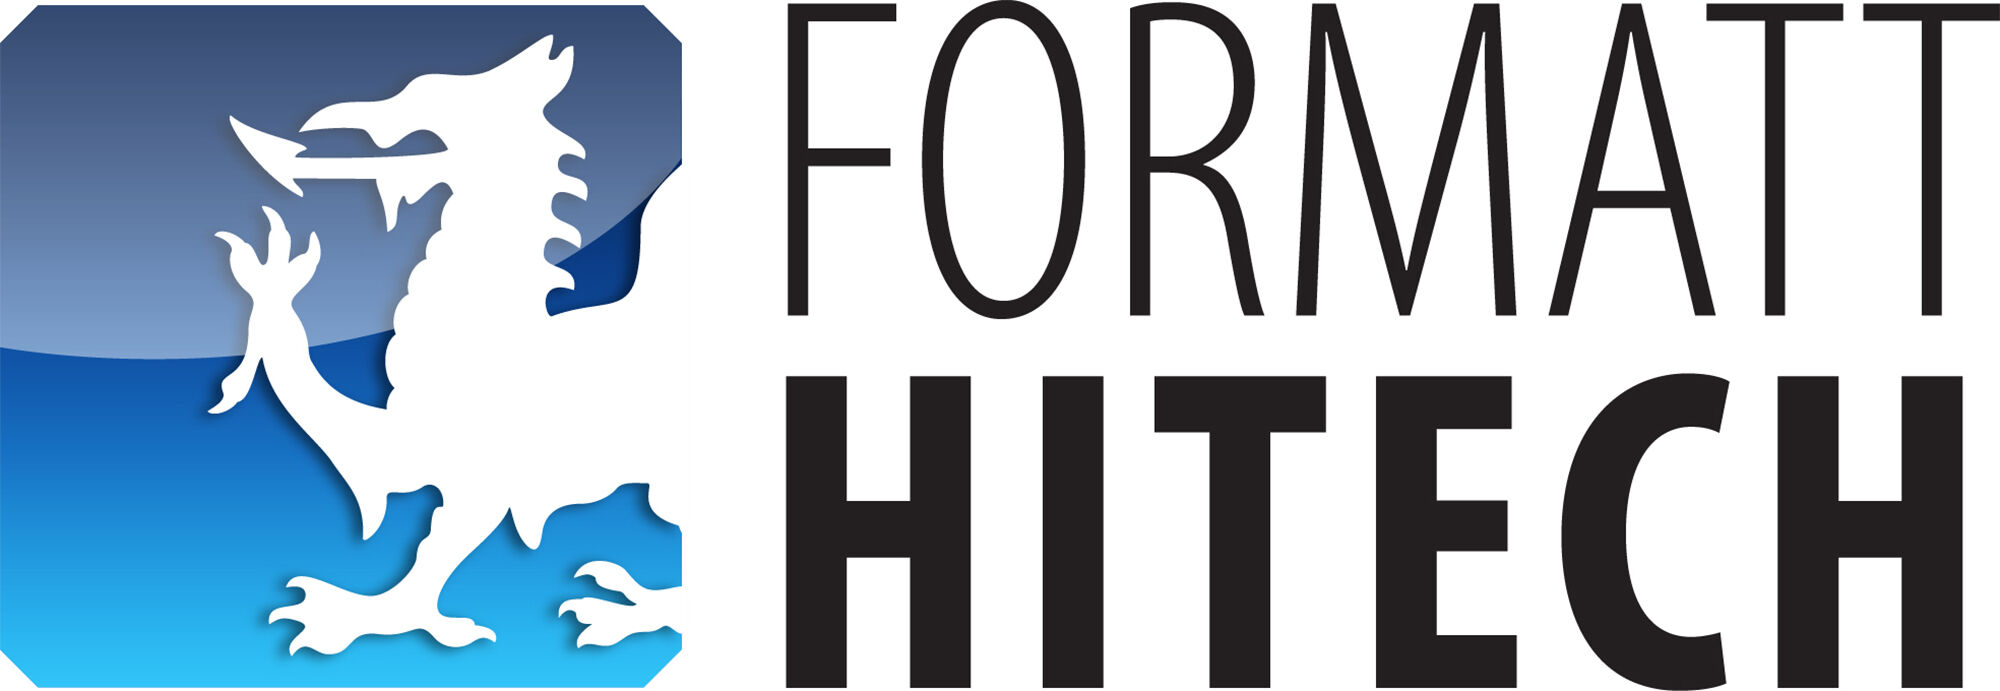 formatt_hitech_logo.jpg